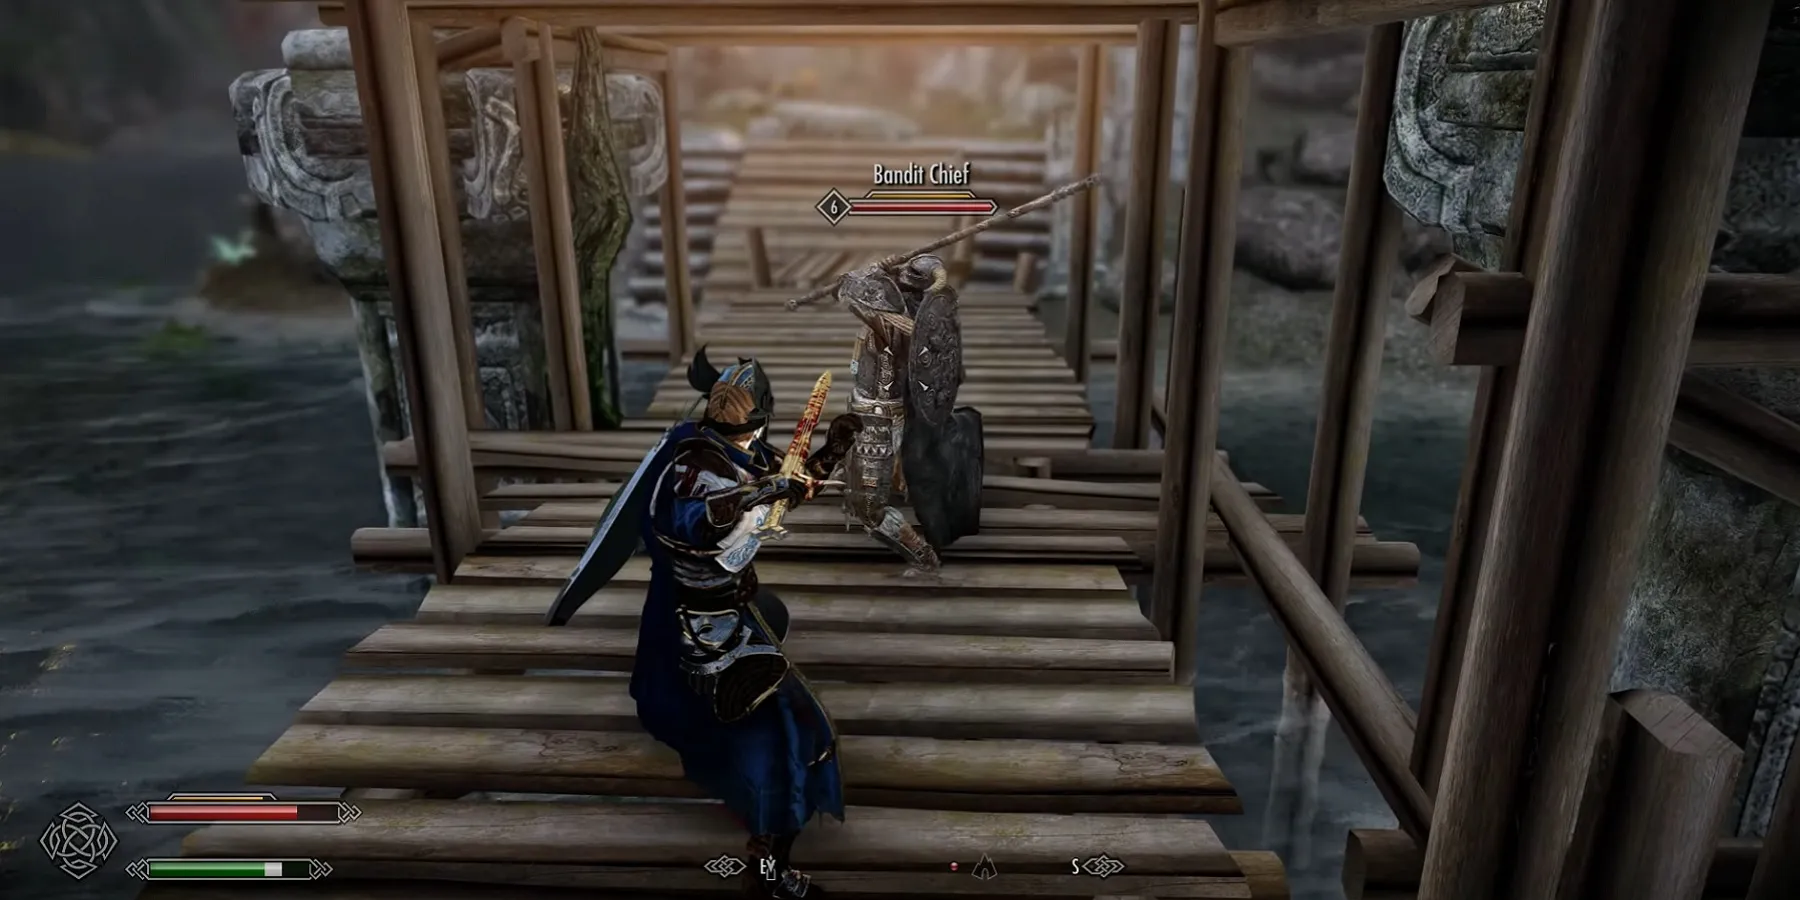 Imagem do Skyrim mostrando duas pessoas prestes a entrar em combate em uma ponte.